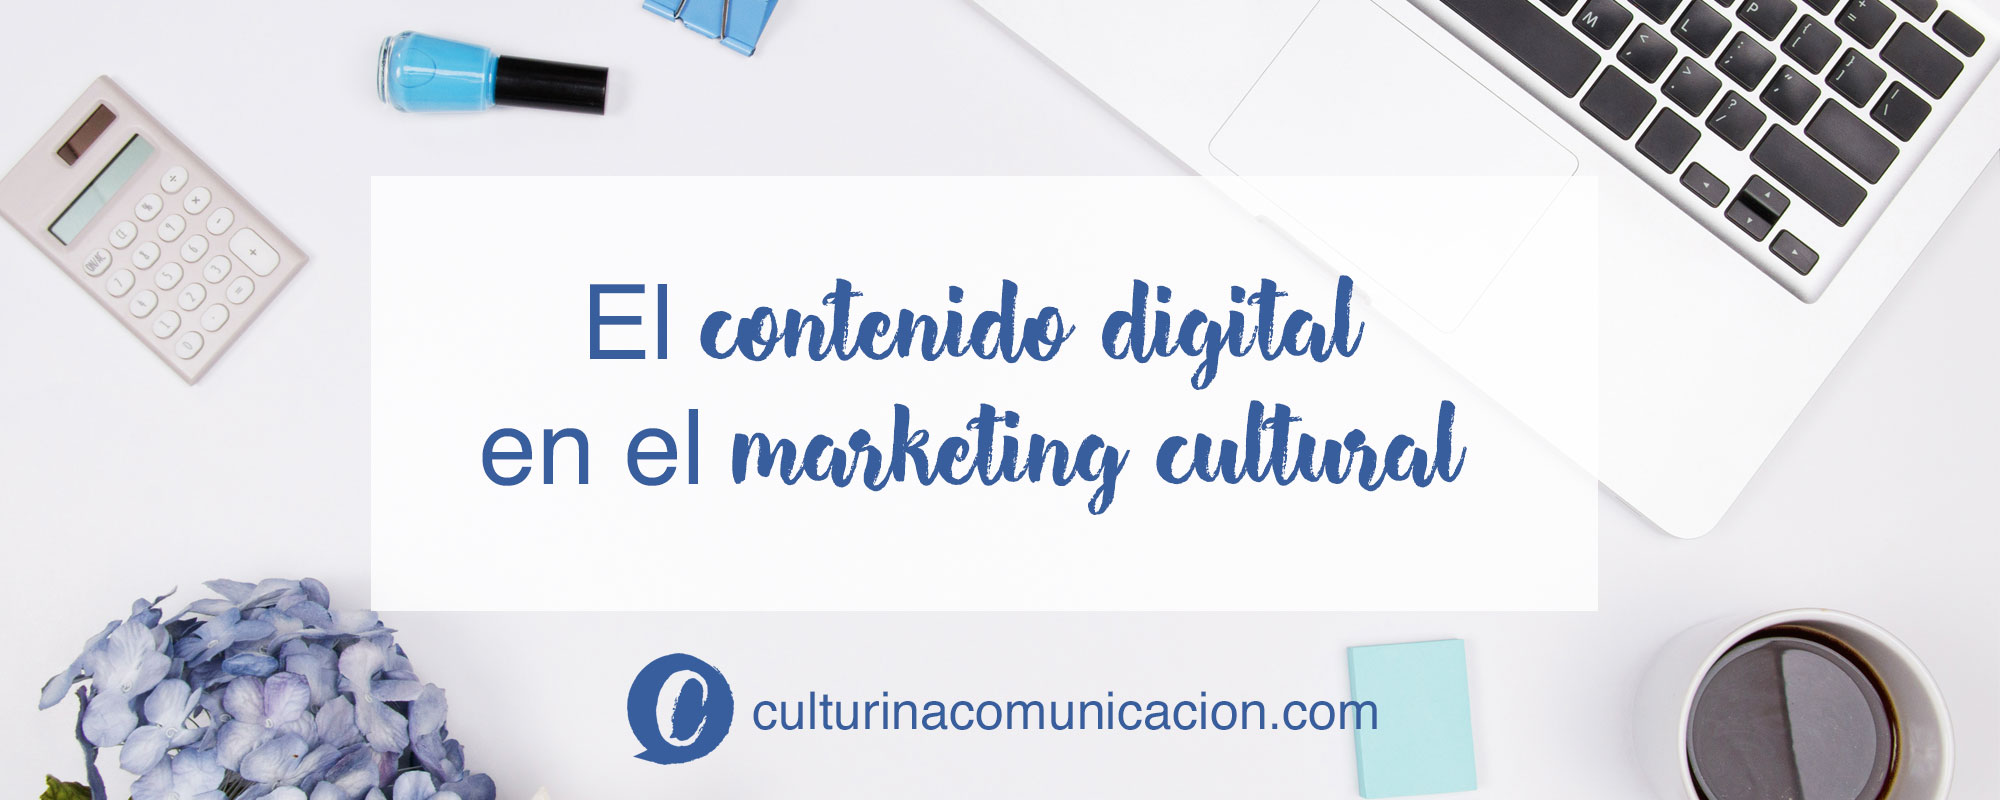 contenido digital en el marketing cultural, culturina comunicación